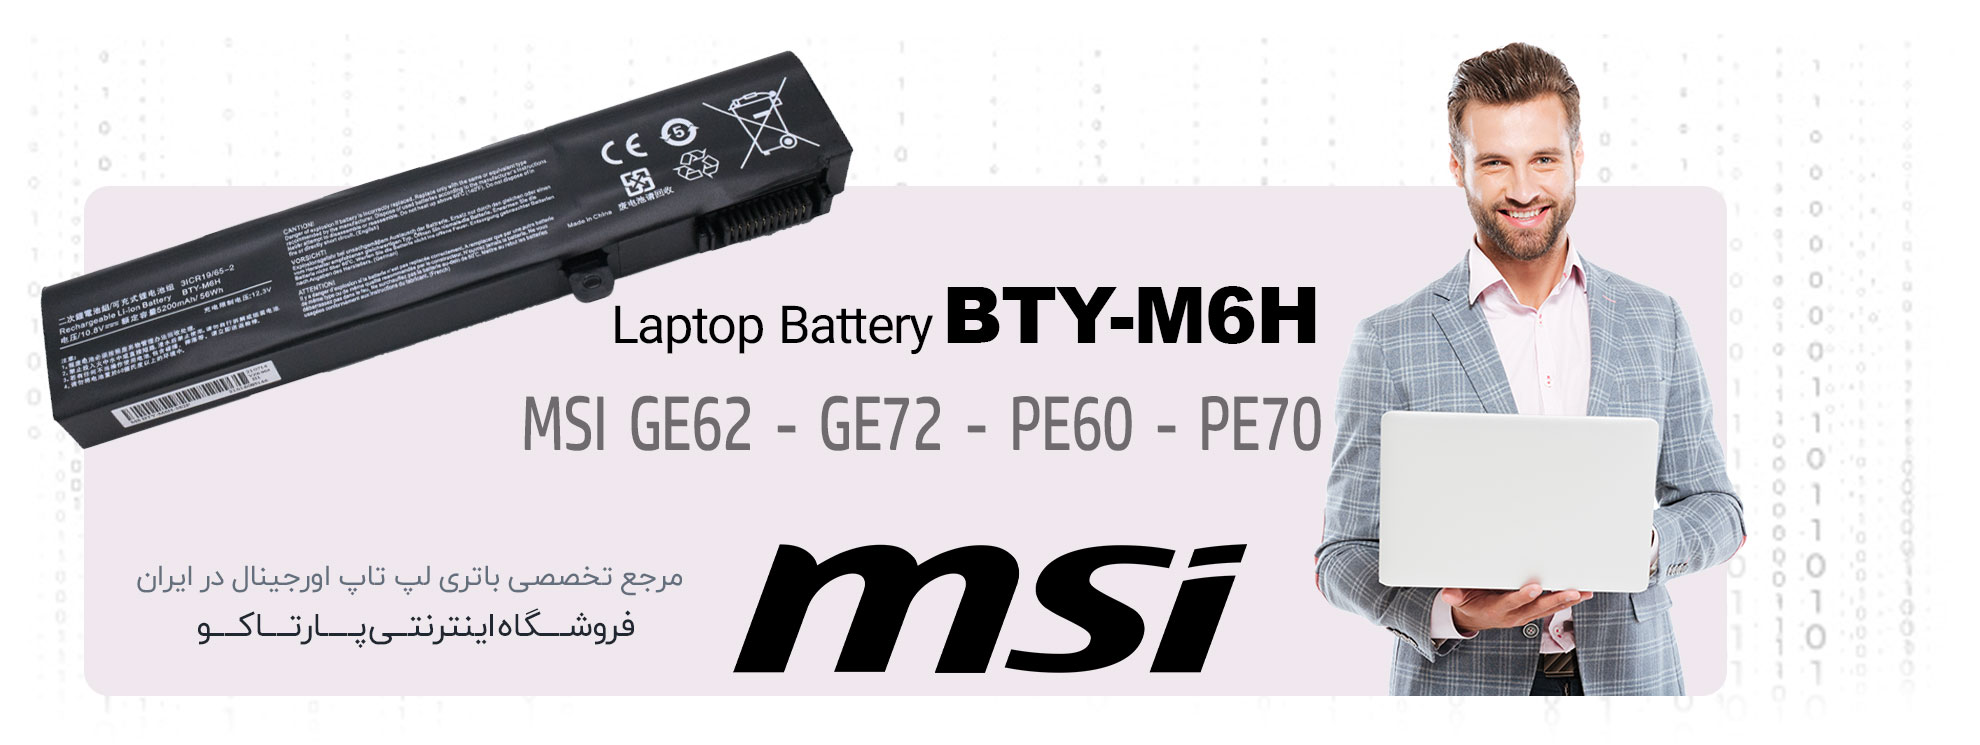 باتری BTY-M6H